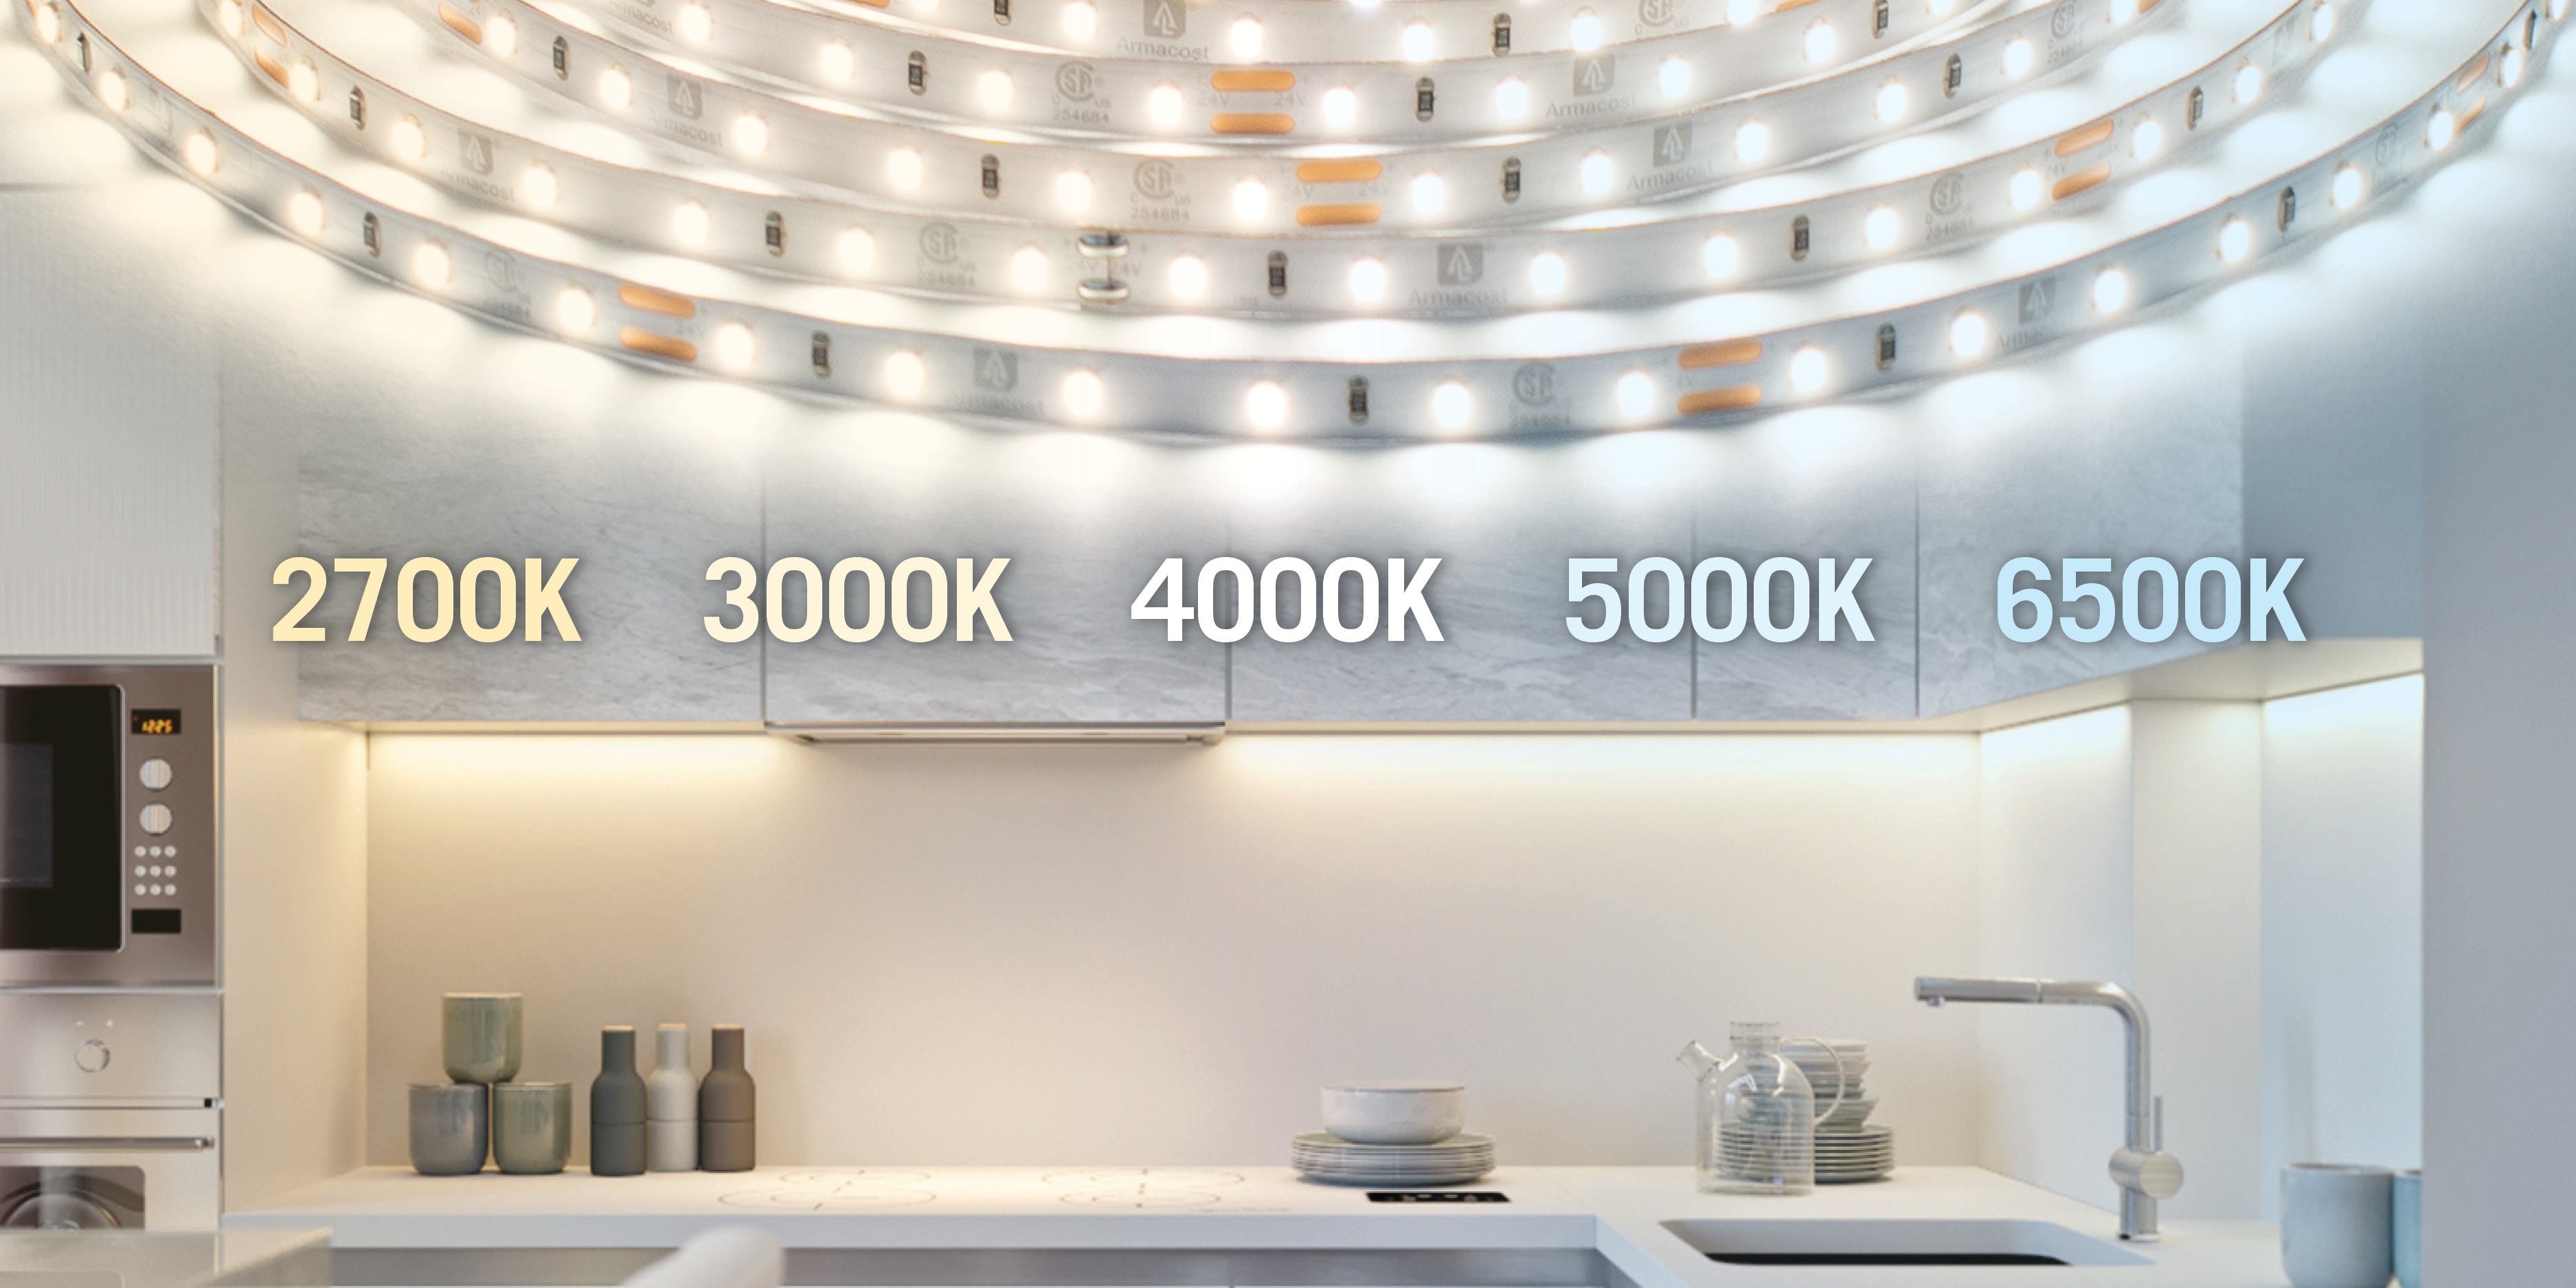 4000k-5000k led pendant light for kitchen